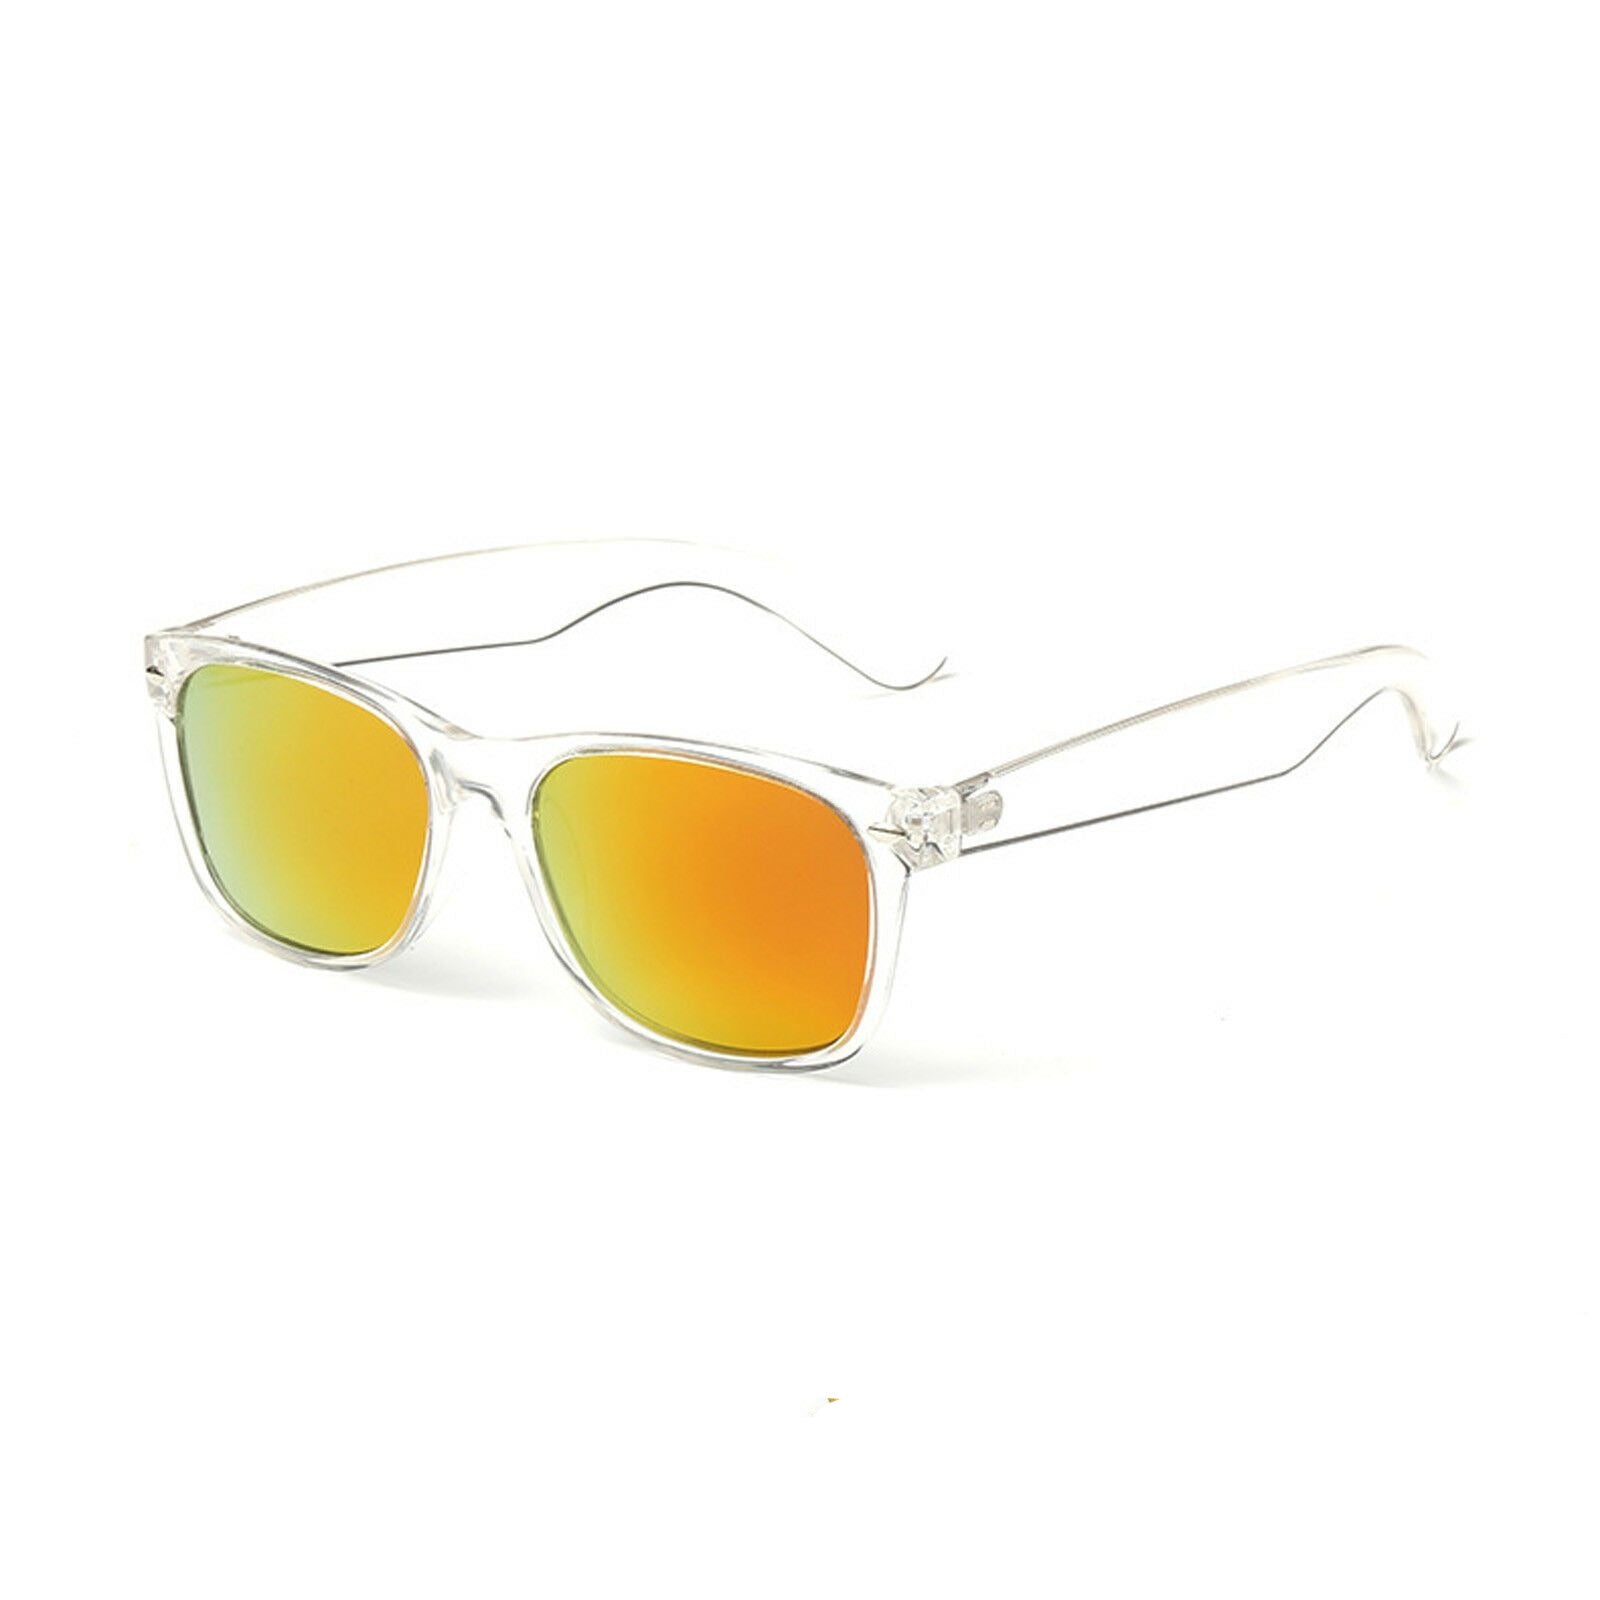 Sunglasses Stylish Mens Polarized Multi-Color Sports Fashion Eyewear Hardcase - Pantsnsox